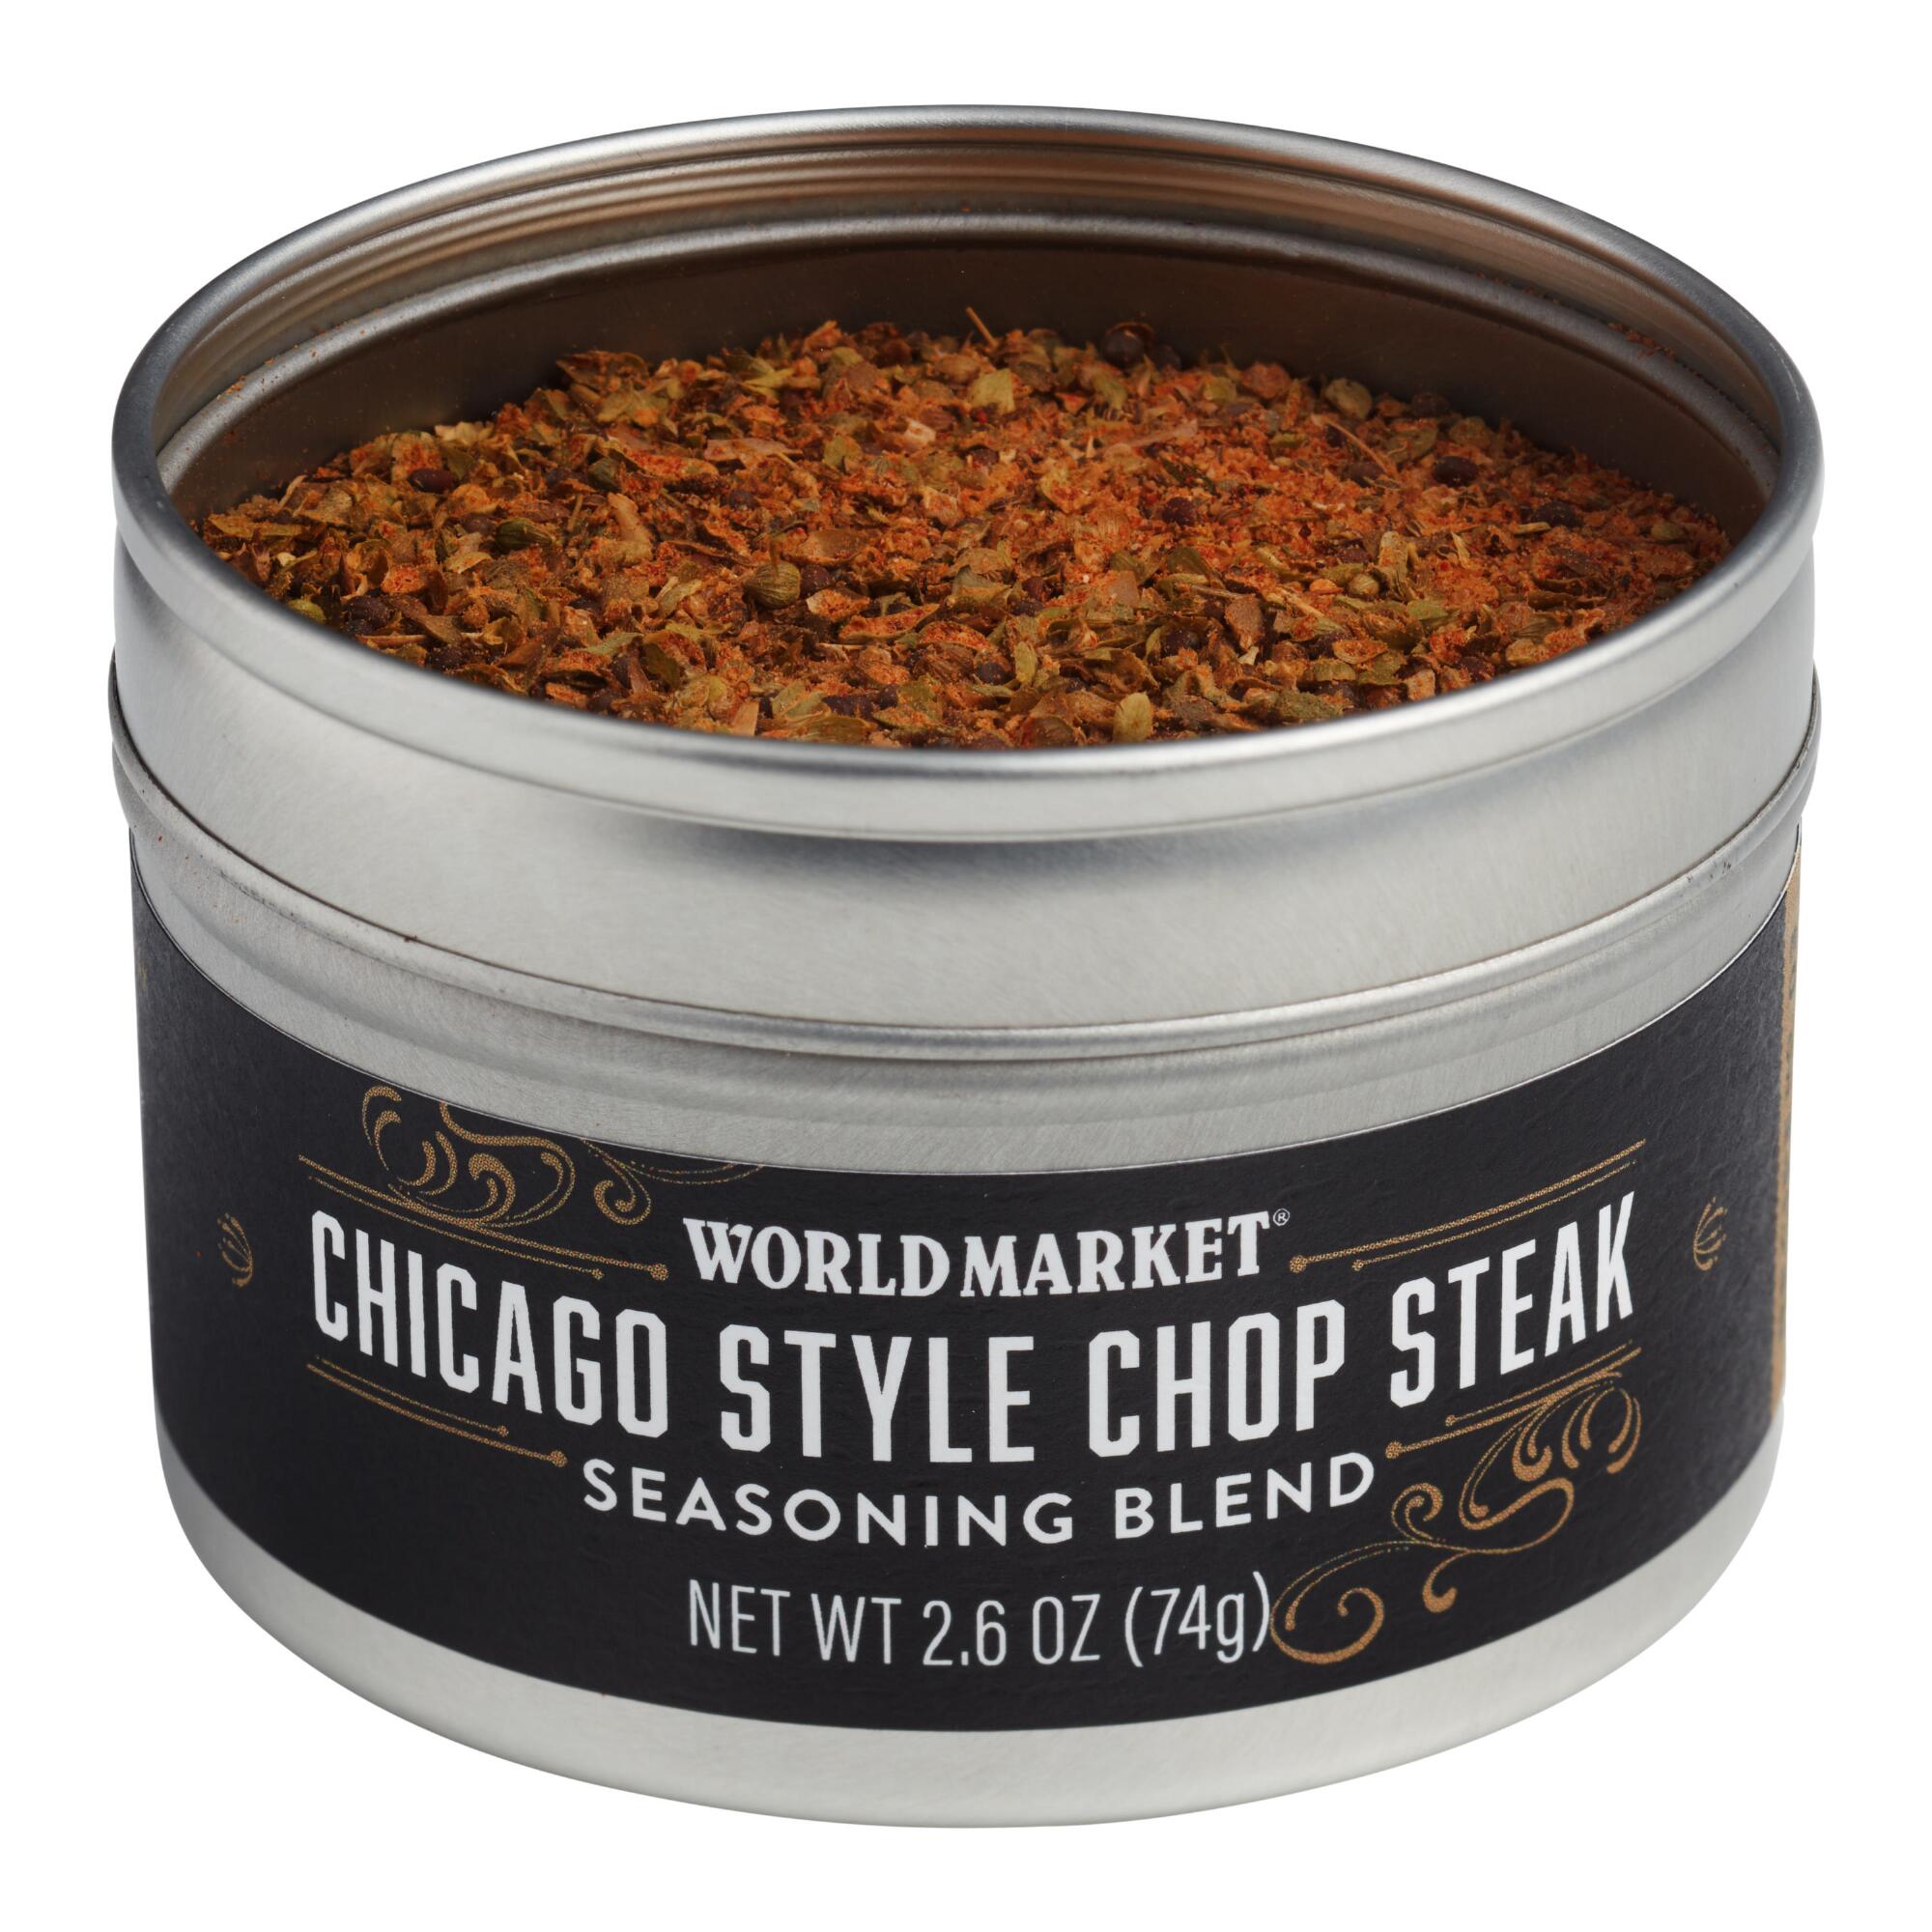 World Market Chicago Style Chop Steak Spice Blend by World Market